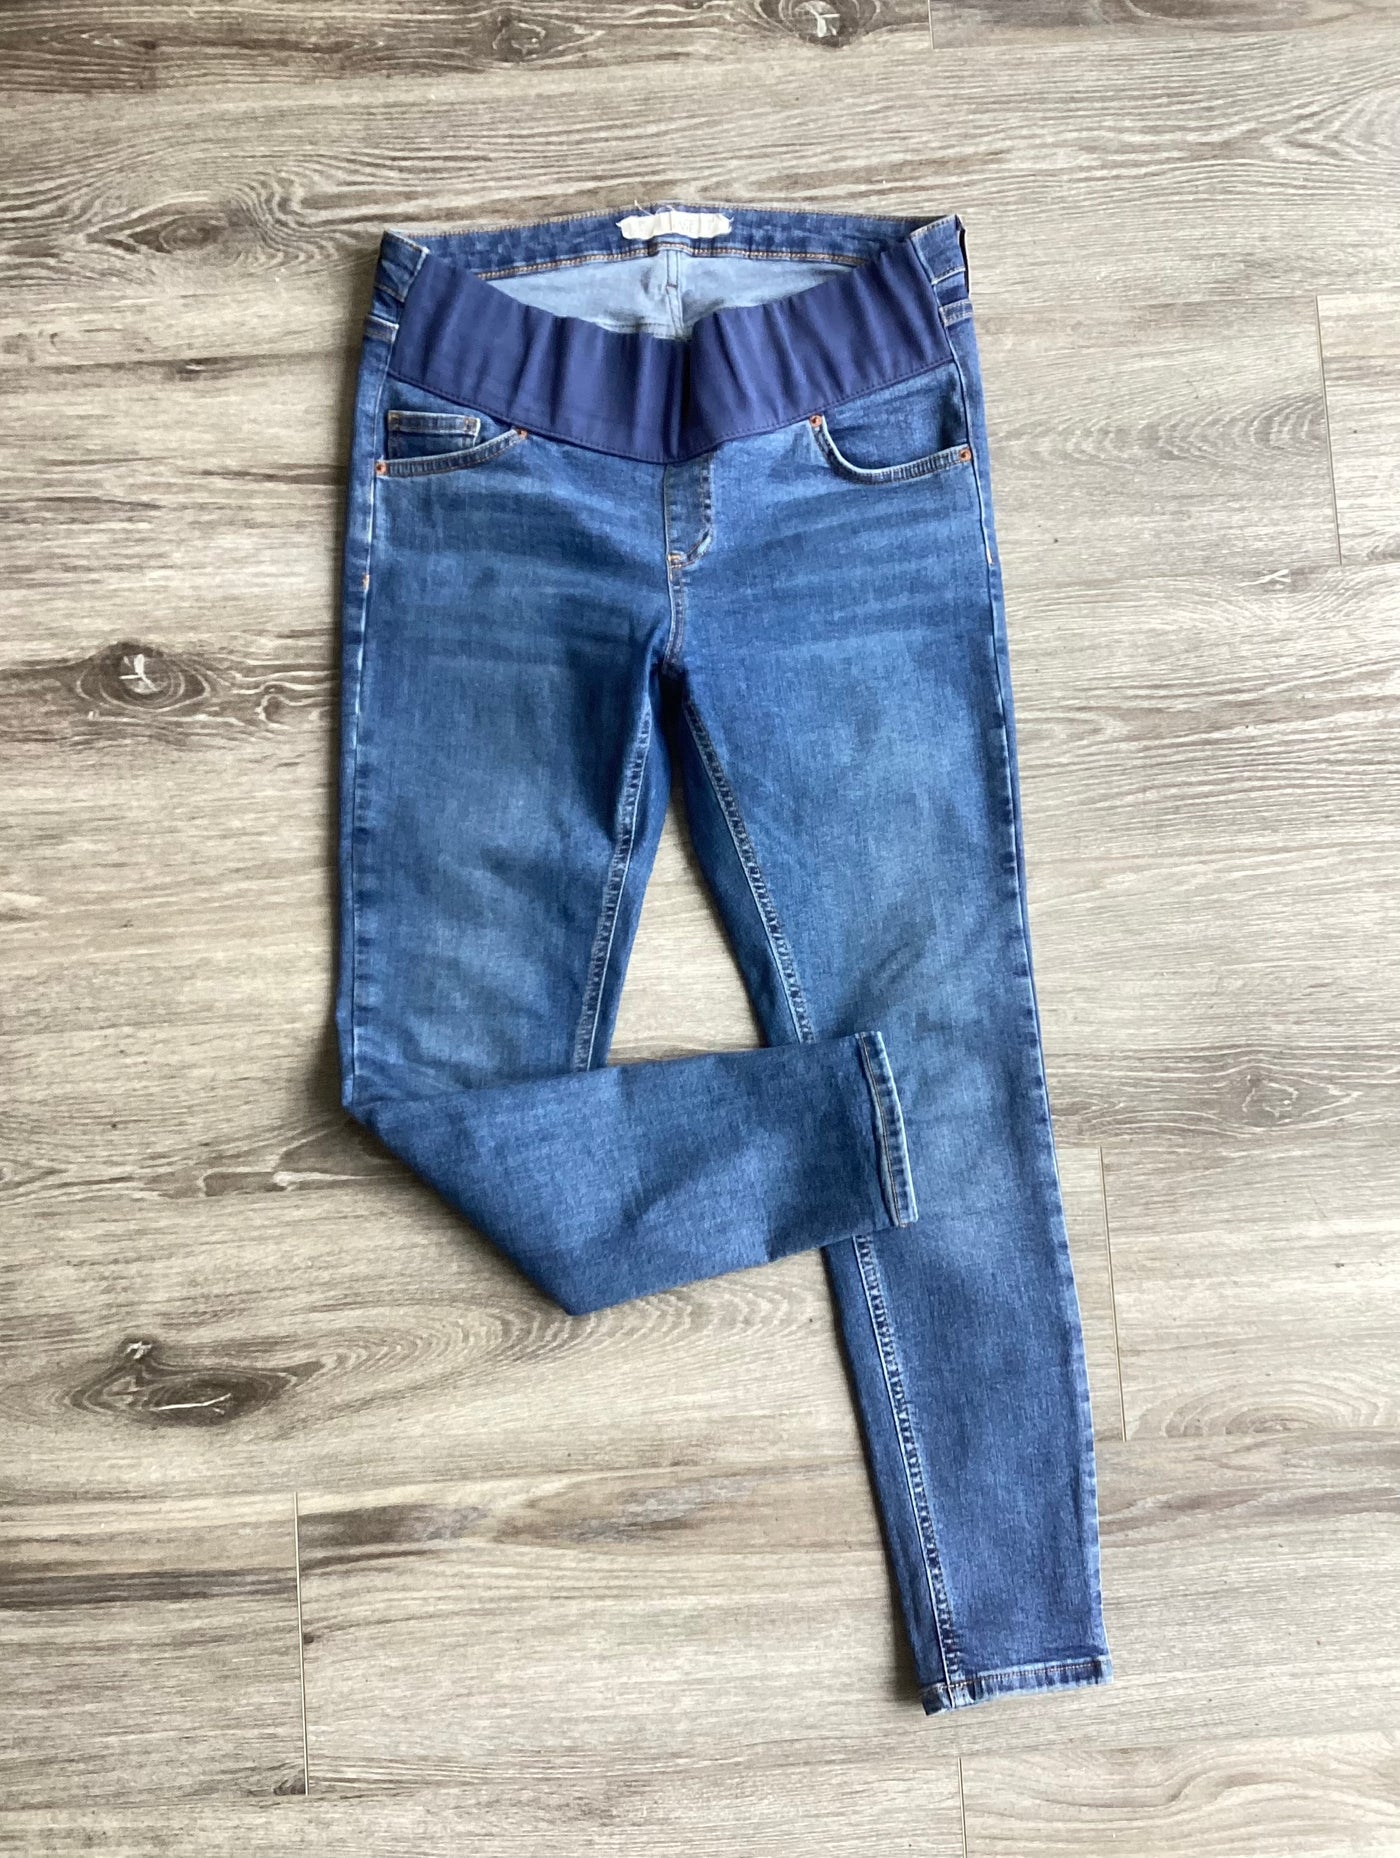 Topshop Maternity blue underbump Jamie jeans - Size 10 L30